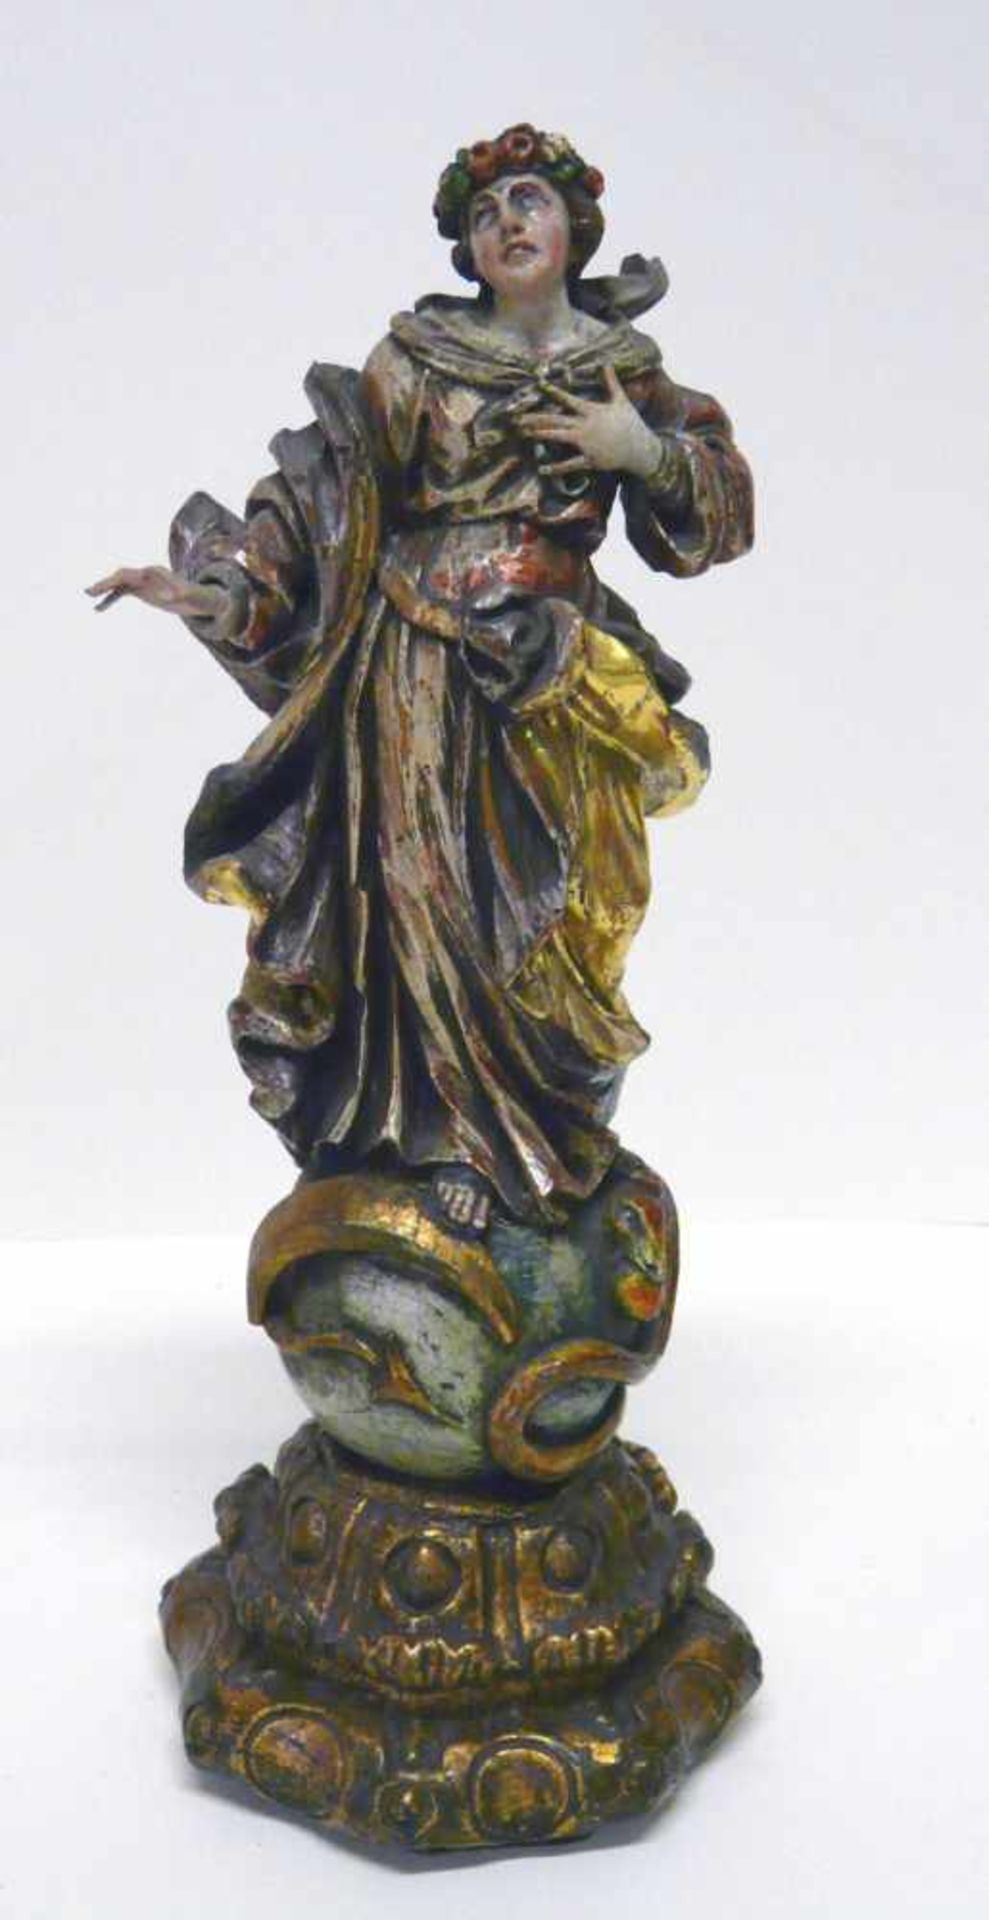 Maria ImmaculataHolz, vollrund geschnitzt, farbig und gold gefasst, wohl 17. Jahrhundert. Auf